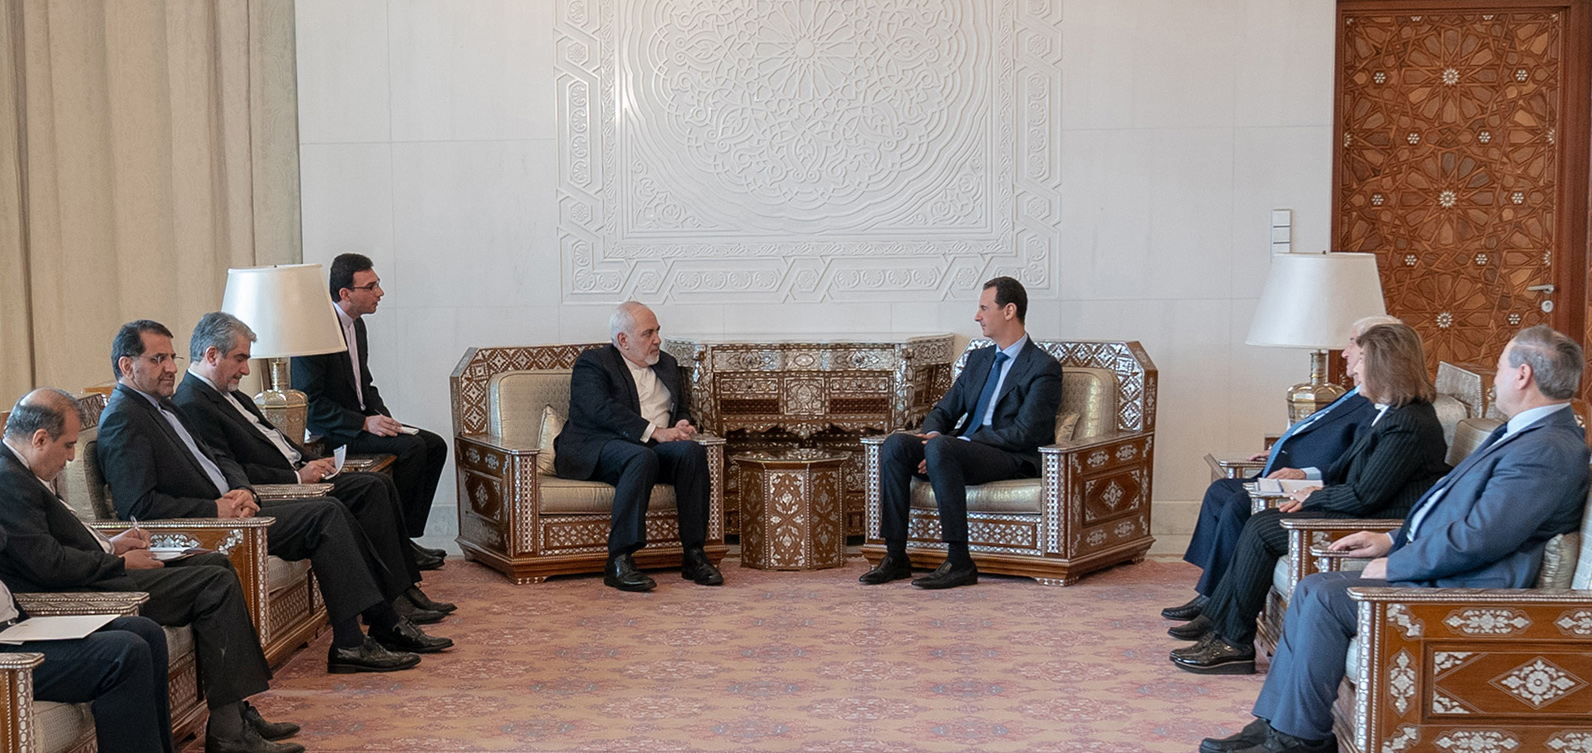 دیدار ظریف و بشار اسد نقطه عطفی در روابط دو کشور